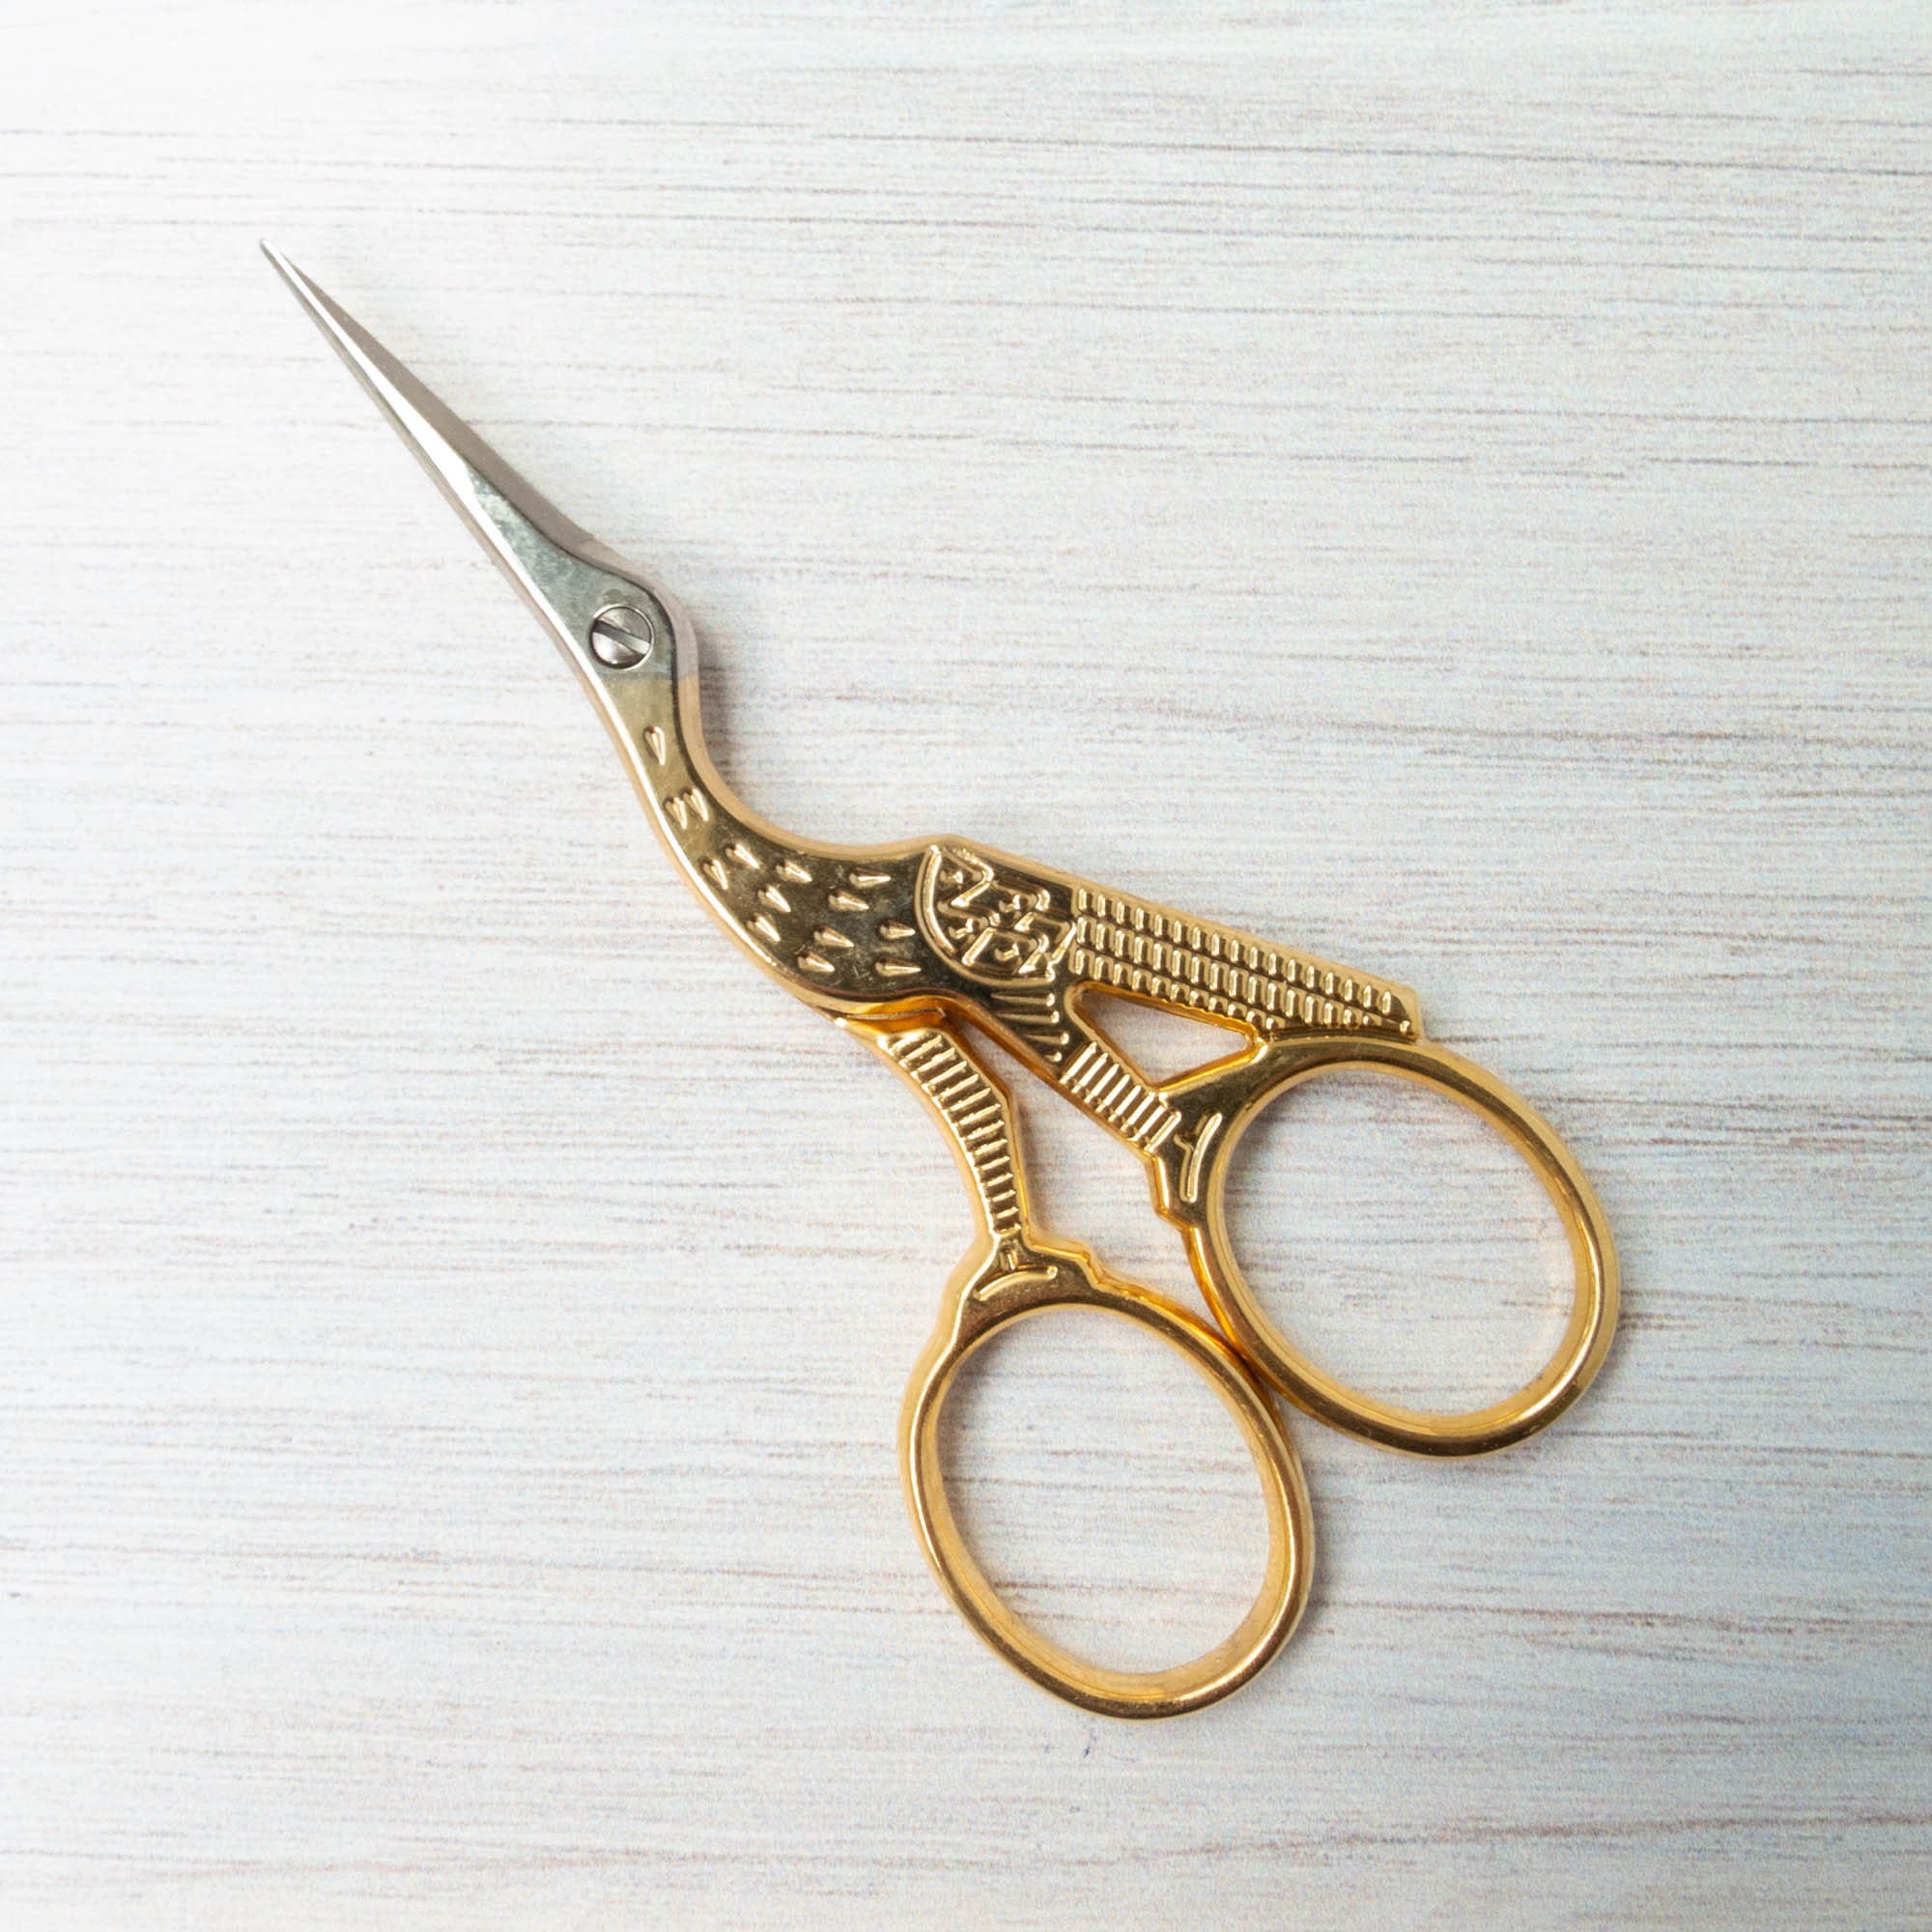 3.5 Multi Purpose Fish Shape Small Embroidery Fancy Scissors Gold